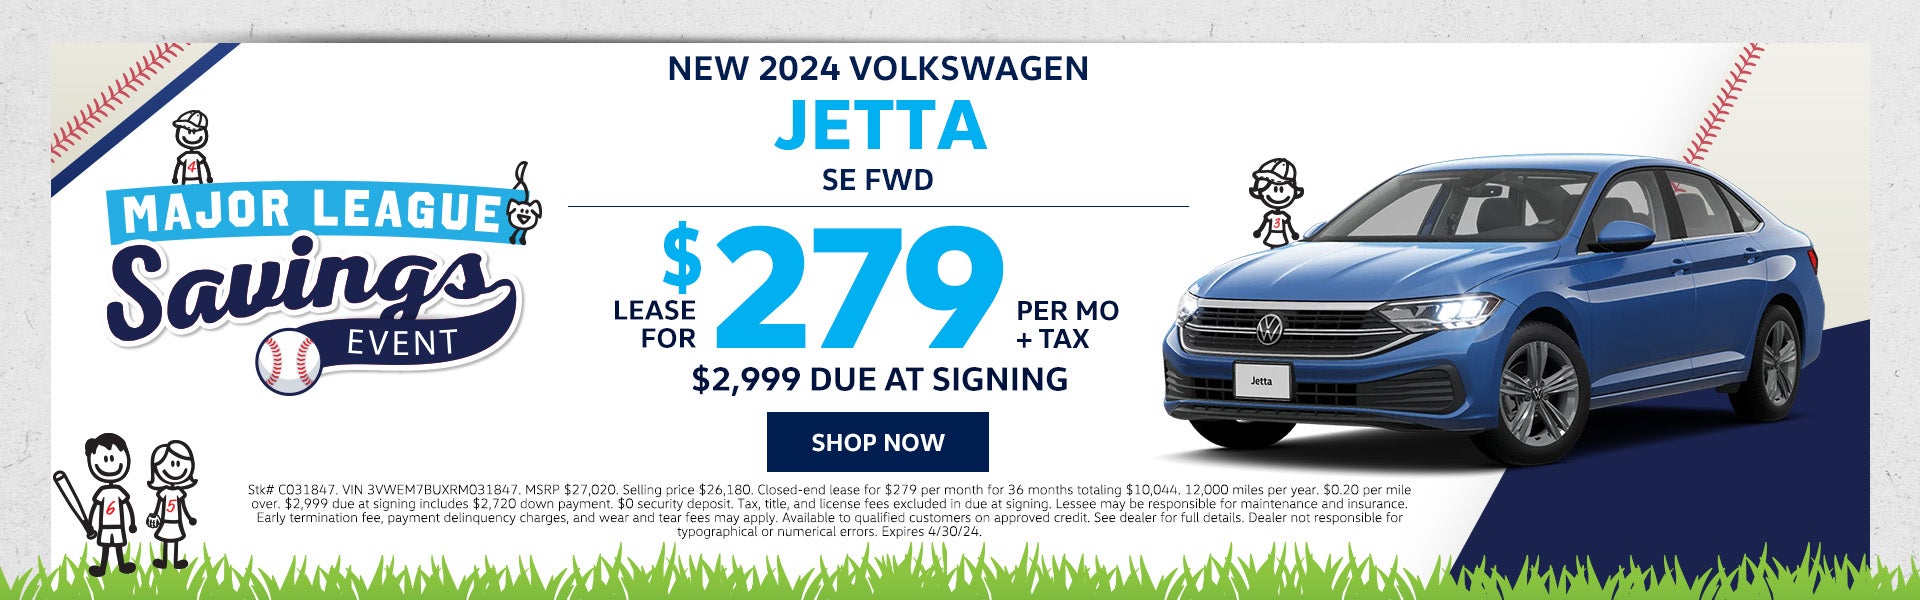 New 2024 VW Jetta